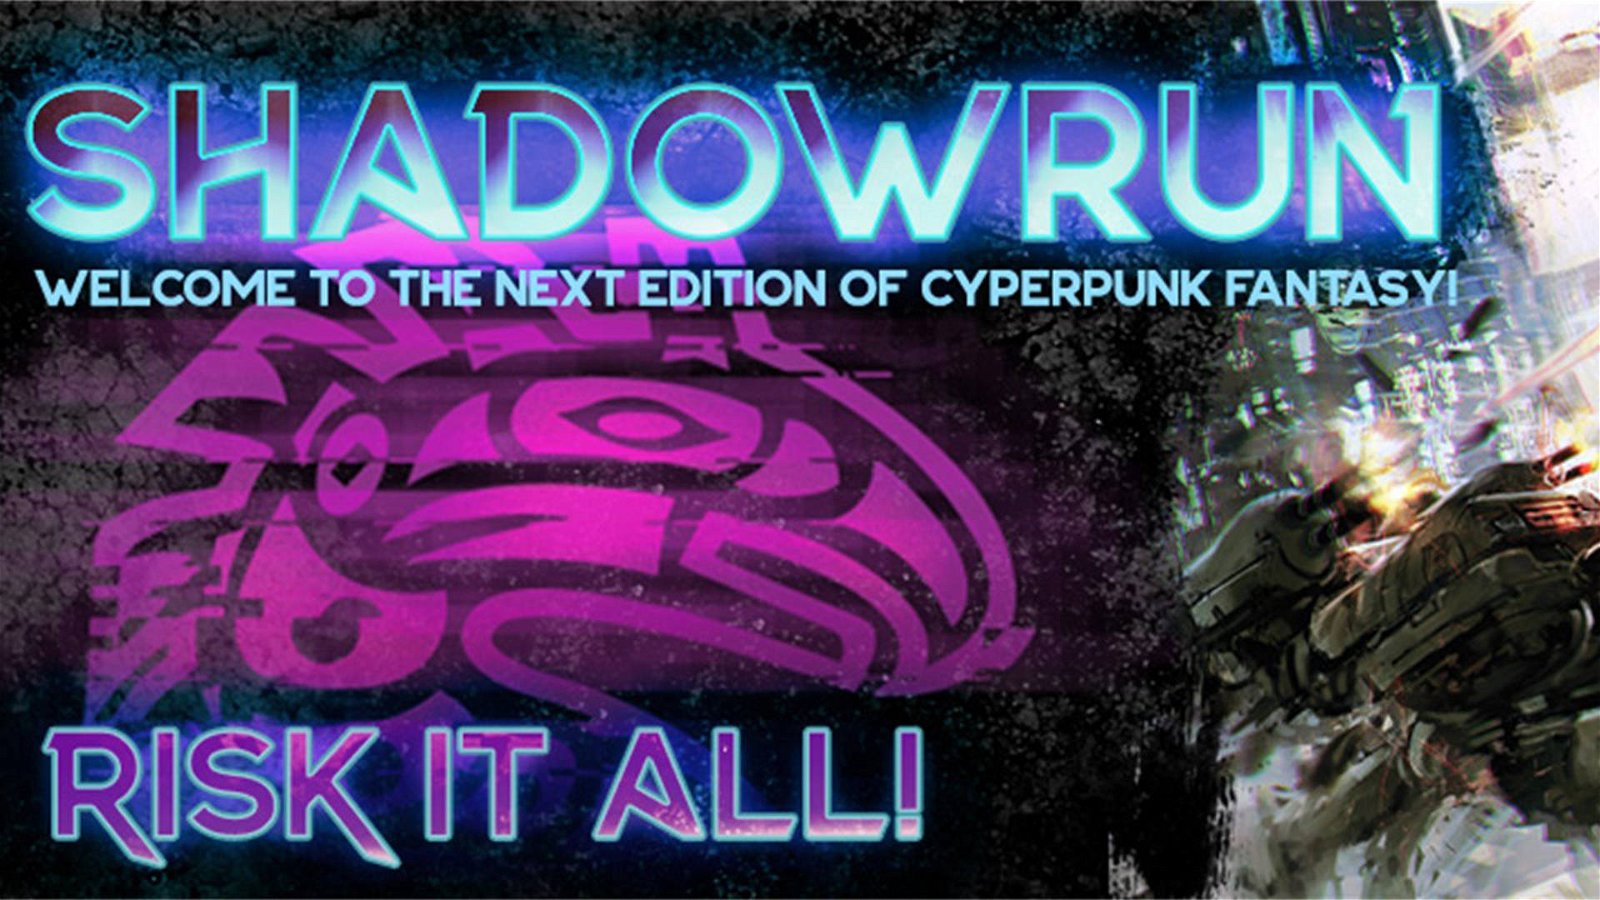 Immagine di Shadowrun, annunciata la sesta edizione del gioco di ruolo!